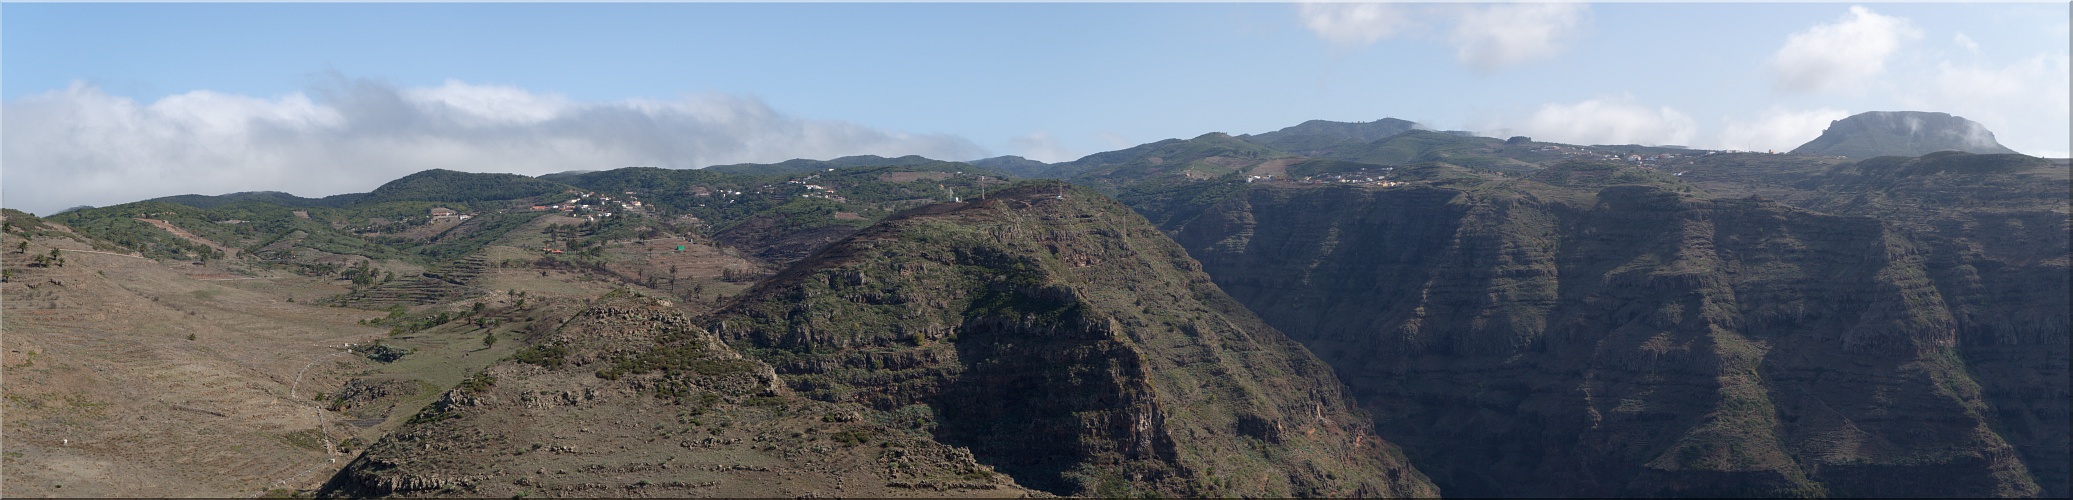 Blick über das obere Valle nach Las Hayas, El Cercado und Chipude